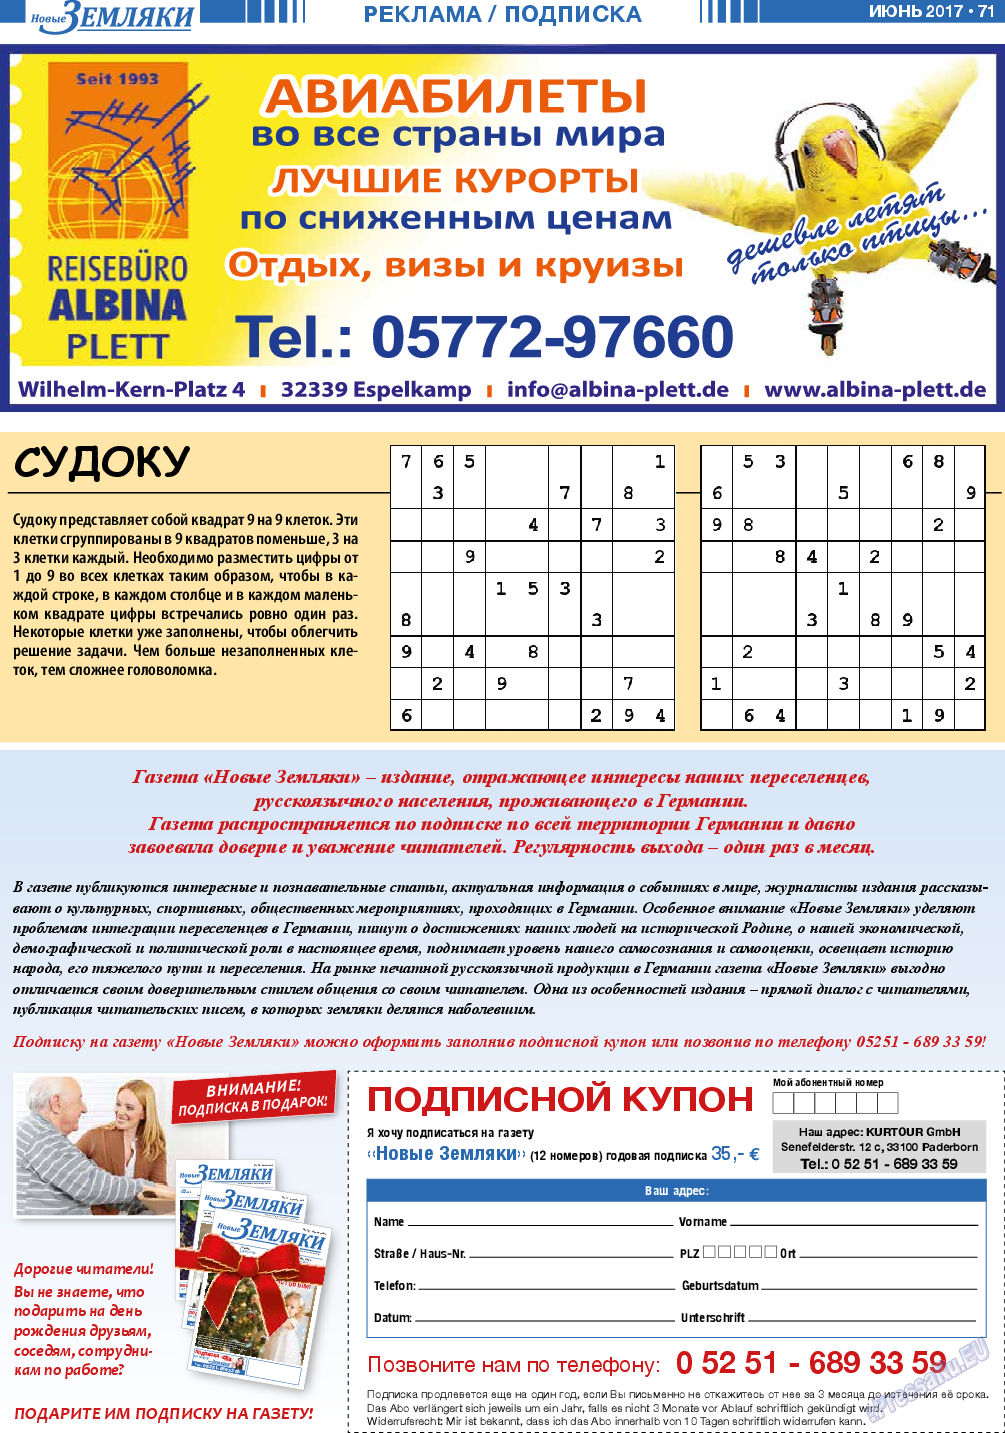 Новые Земляки (газета). 2017 год, номер 6, стр. 71